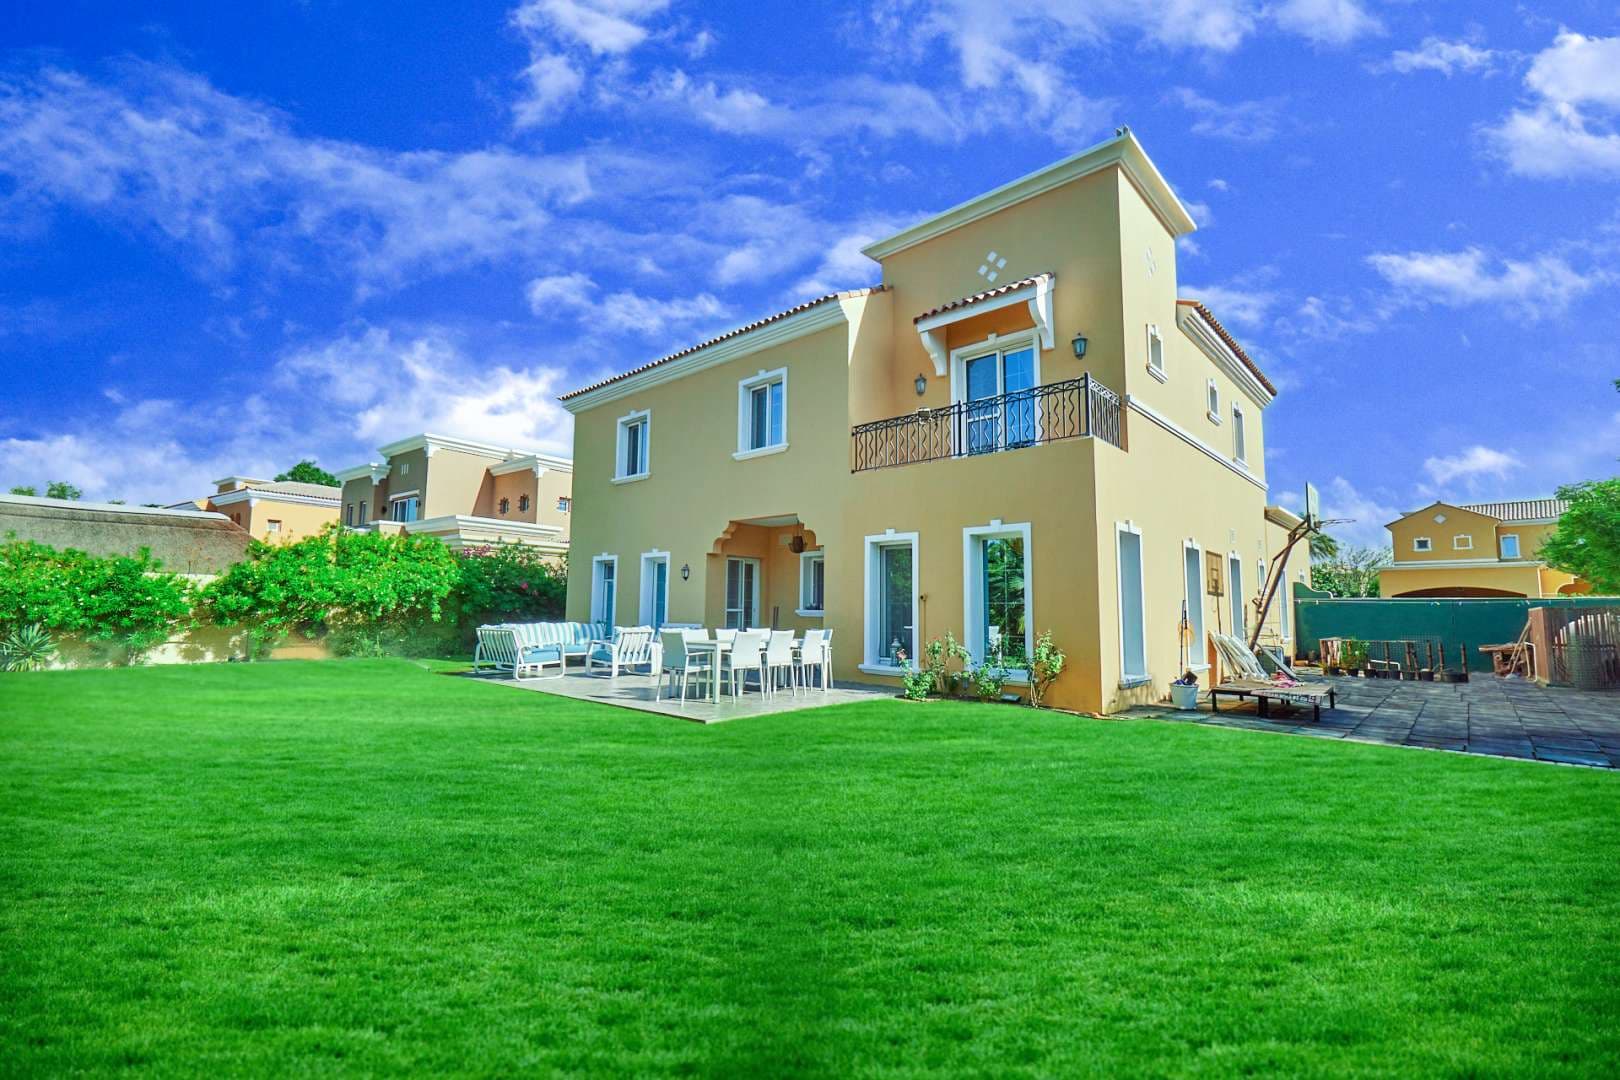 4 Bedroom Villa For Sale Mirador La Coleccion Lp08905 9f80eb3ca970280.jpg